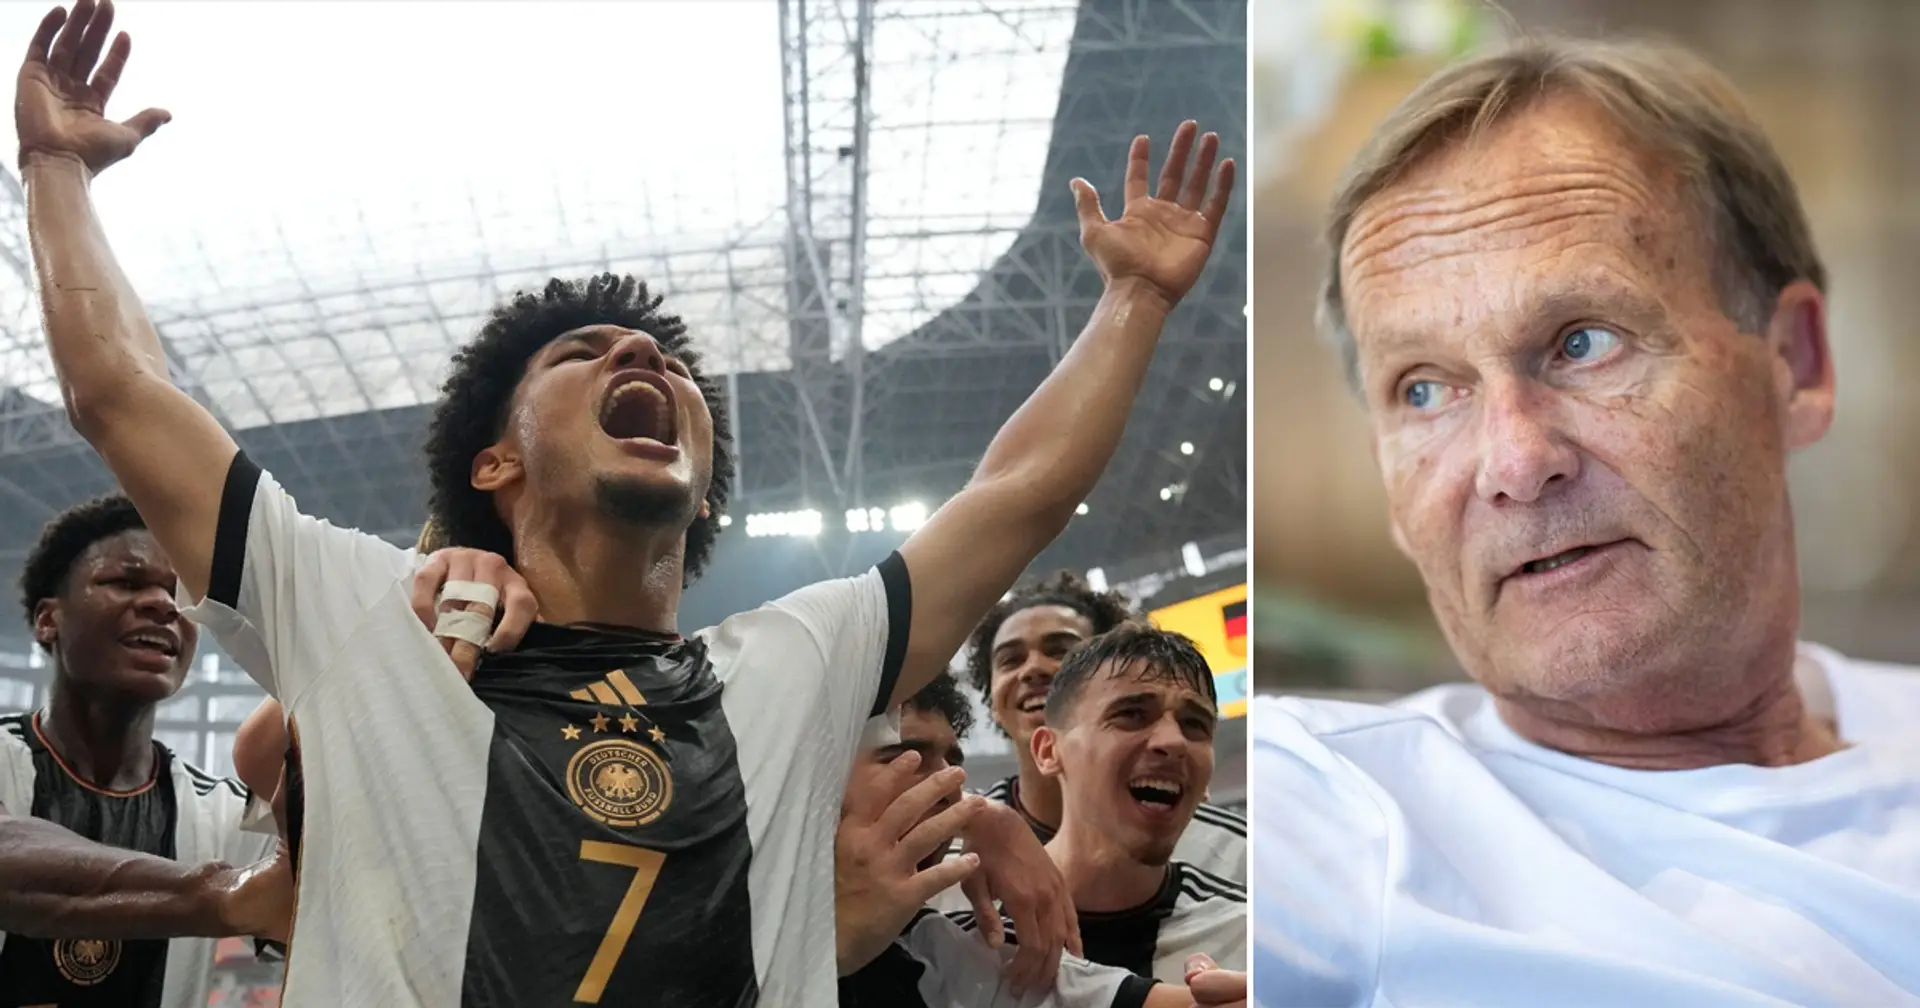 "Genau die Geschichten, die deutscher Fußball benötigt": Watzke schwärmt von Brunner und U17 des DFB